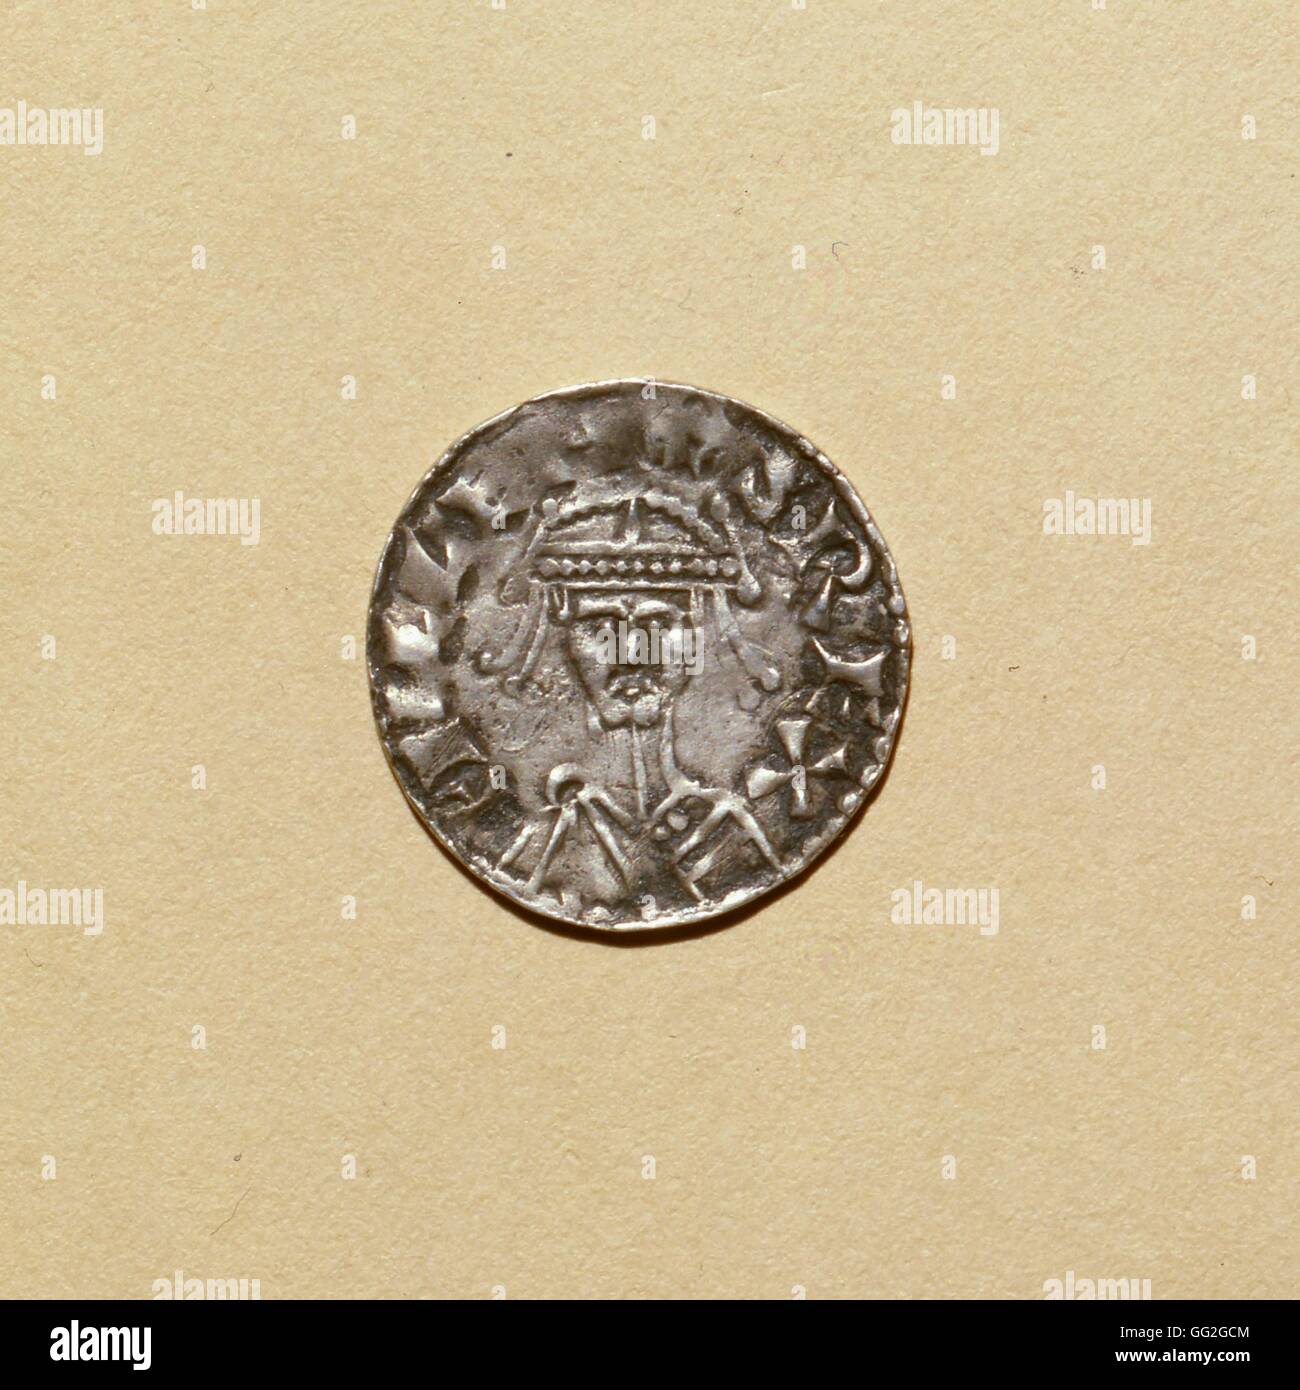 Recto d'un denier d'argent de Guillaume le Conquérant, duc de Normandie et Roi d'Angleterre. 11e siècle Banque D'Images